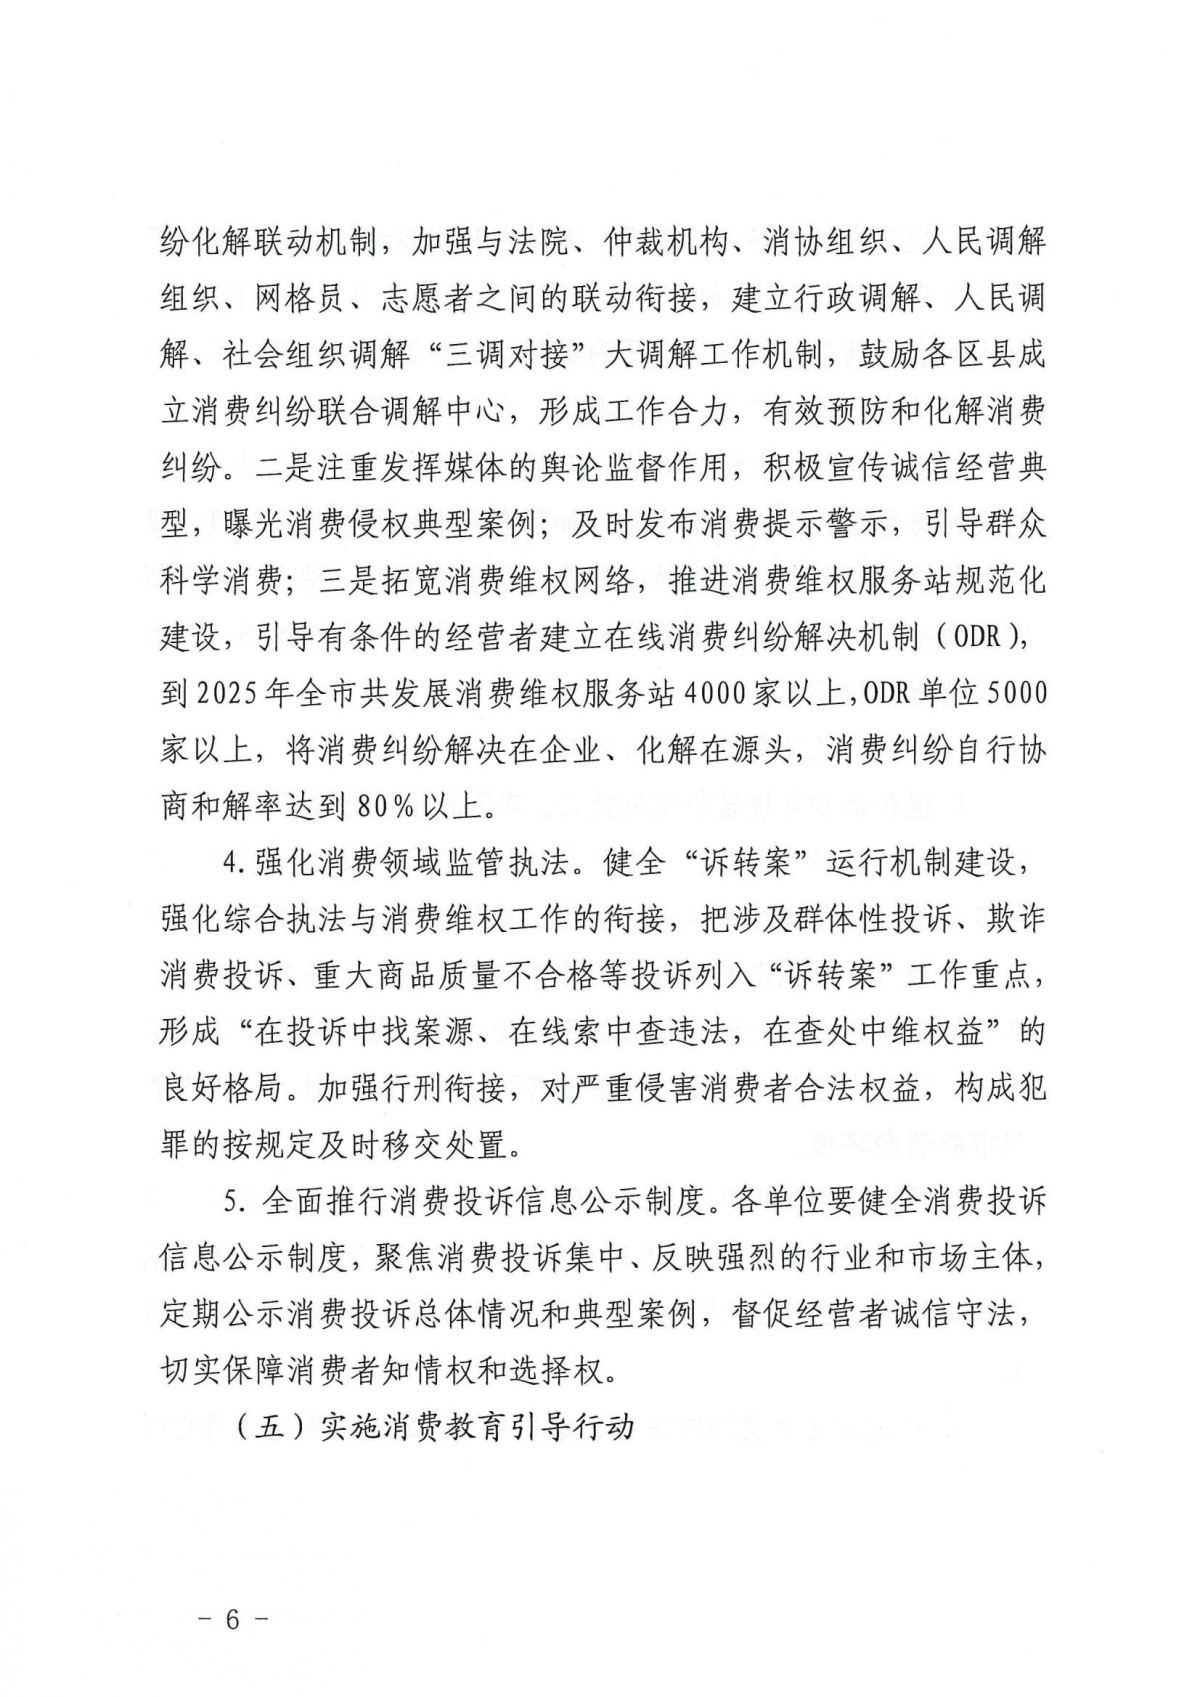 附件：关于印发《“放心消费在济南”创建深化提升三年行动实施方案》的通知_05